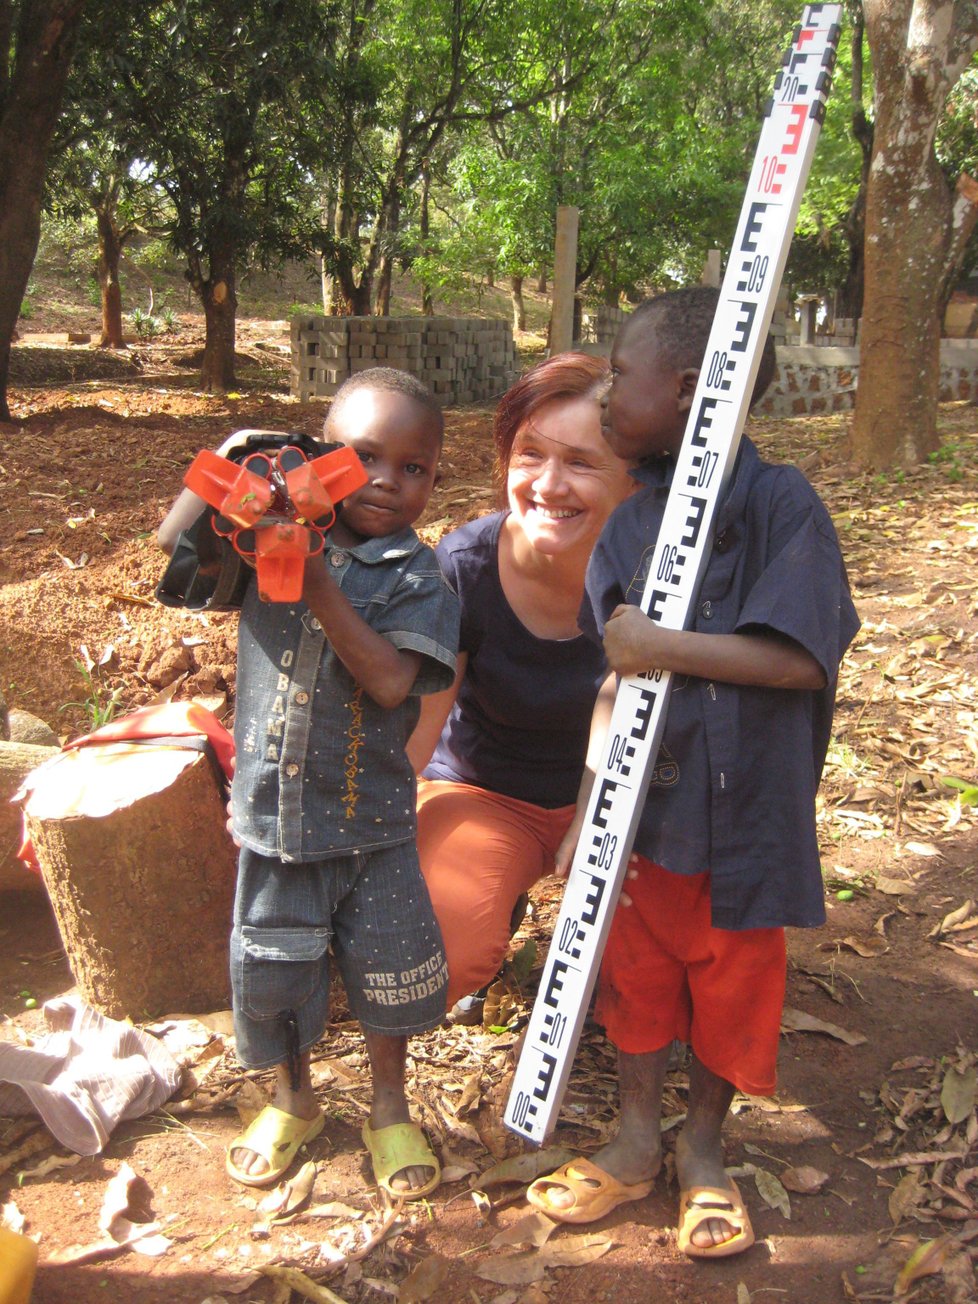 Paní Ludmila zasvětila svůj život pomoci lidem ve Středoafrické republice.